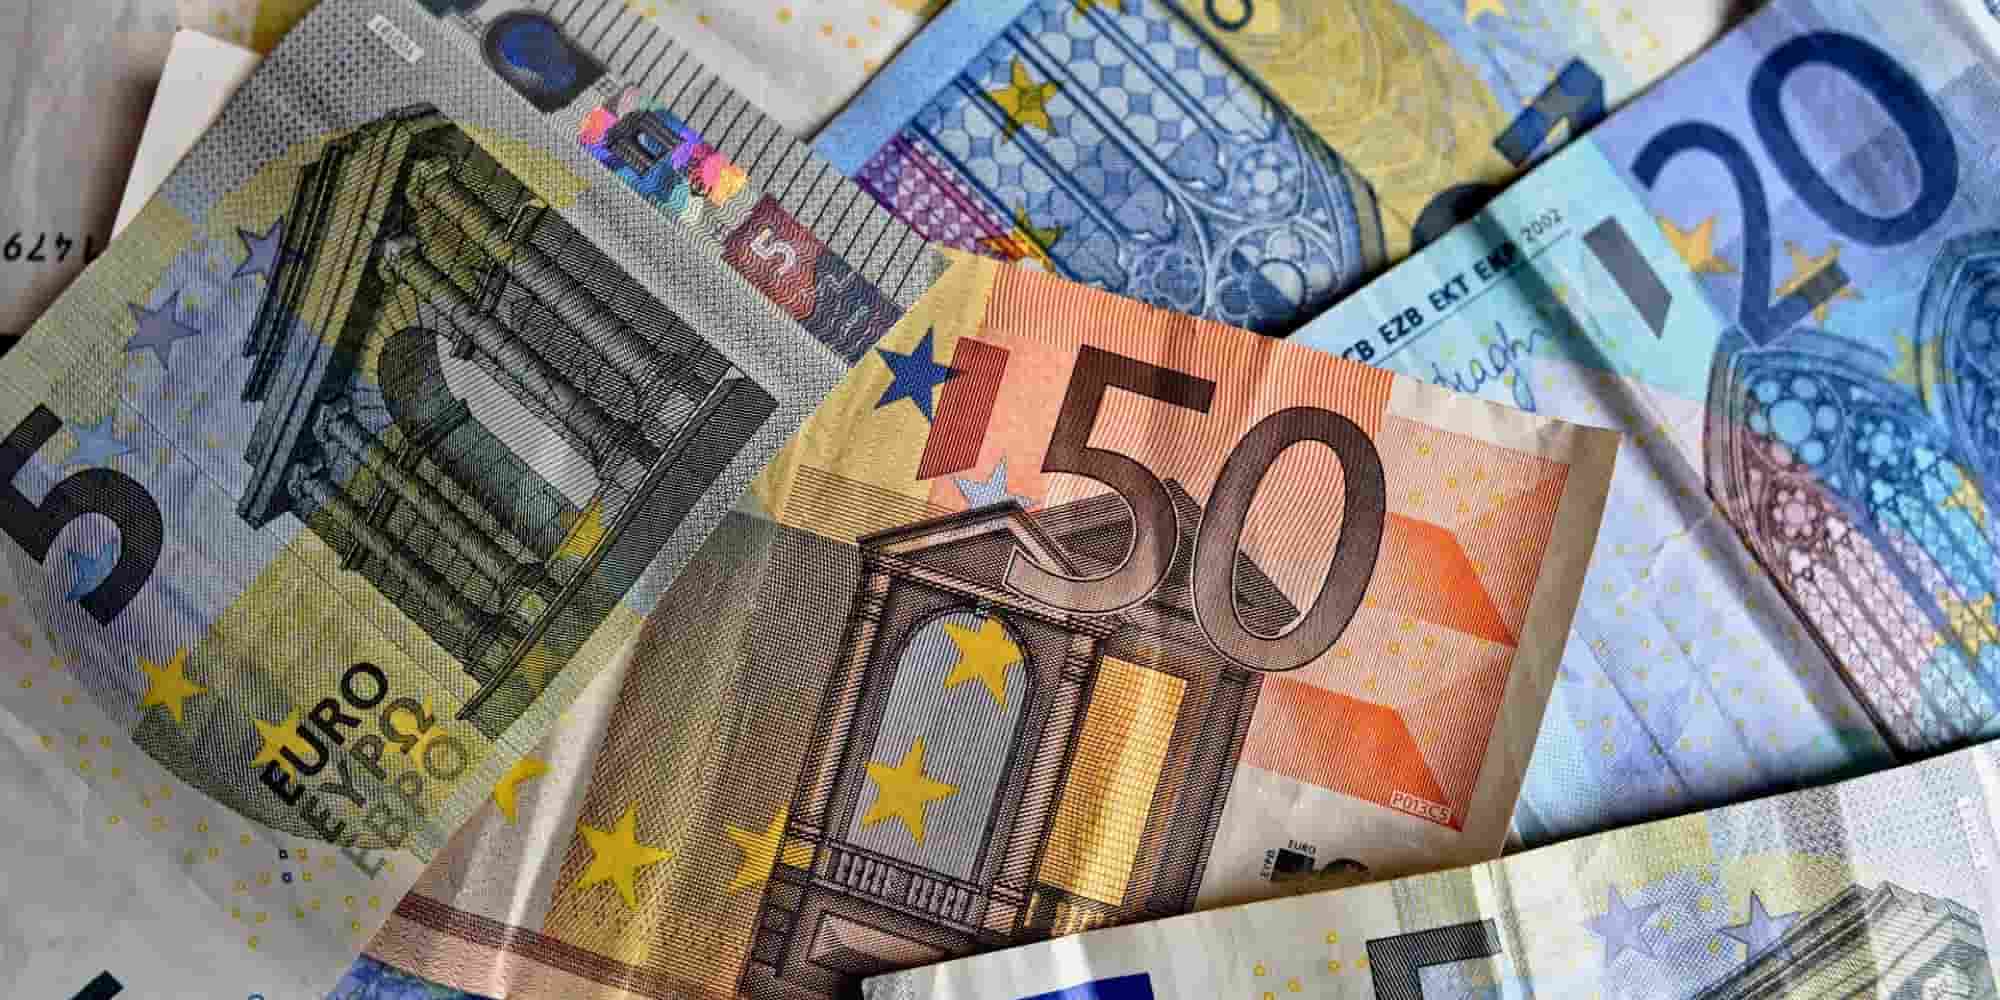 Επίδομα 534 ευρώ: Σήμερα Παρασκευή η πληρωμή για τις αναστολές Ιανουαρίου